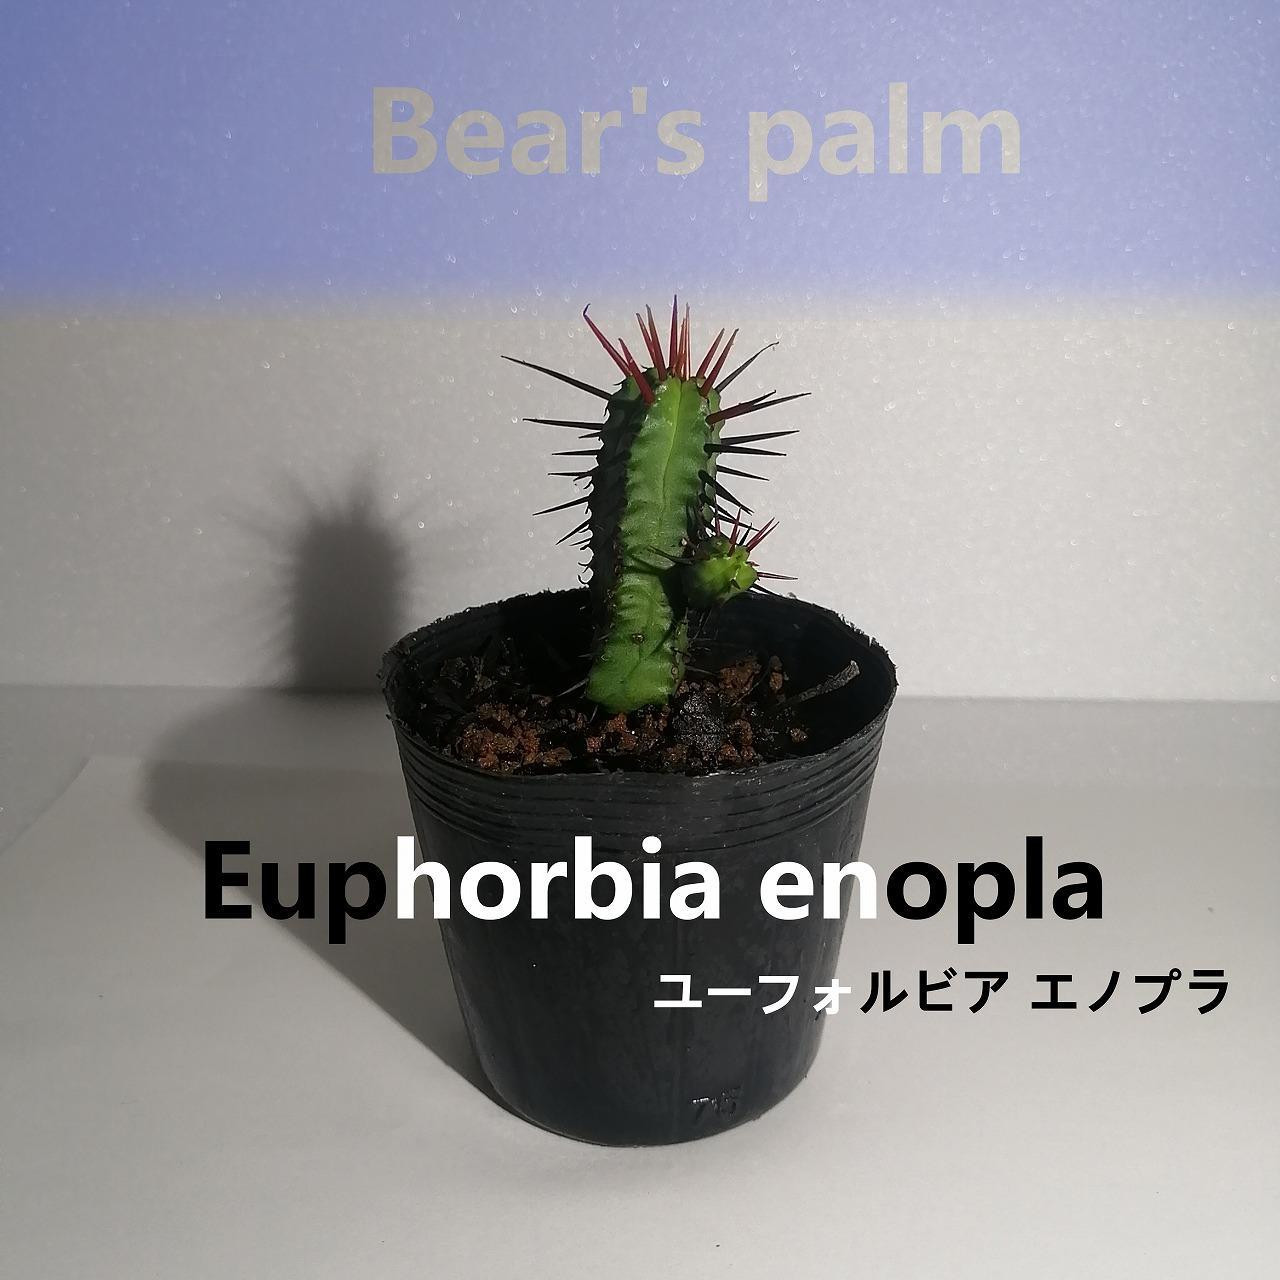 
ユーフォルビアエノプラ　Euphorbia enopla_栃木県大田原市生産品_Bear‘s palm
